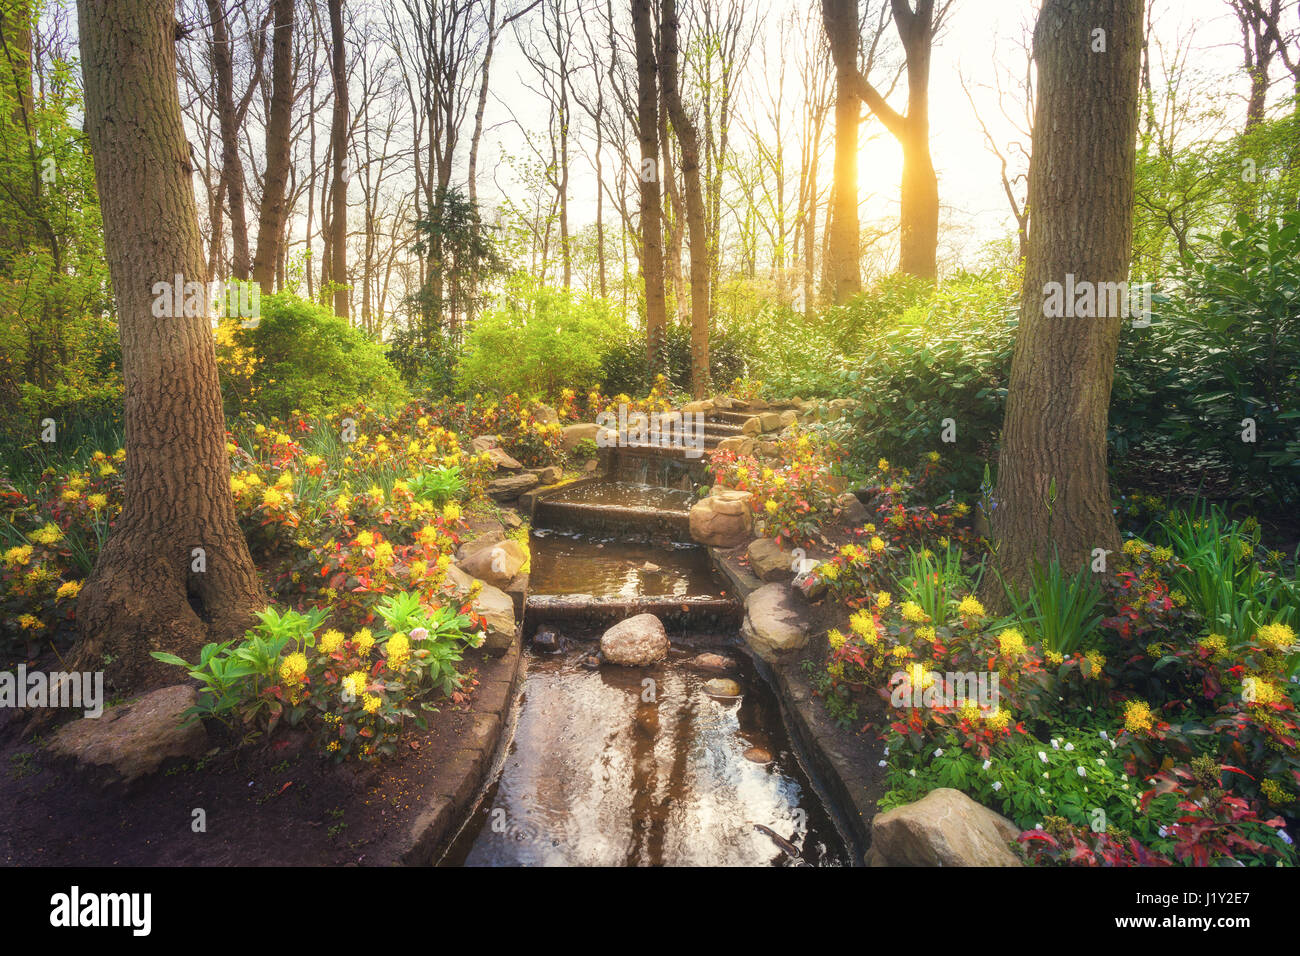 Blooming spring park avec de l'eau en cascade, parc de Keukenhof célèbre aux Pays-Bas. Beau paysage avec des fleurs colorées, des arbres avec des feuilles vertes Banque D'Images